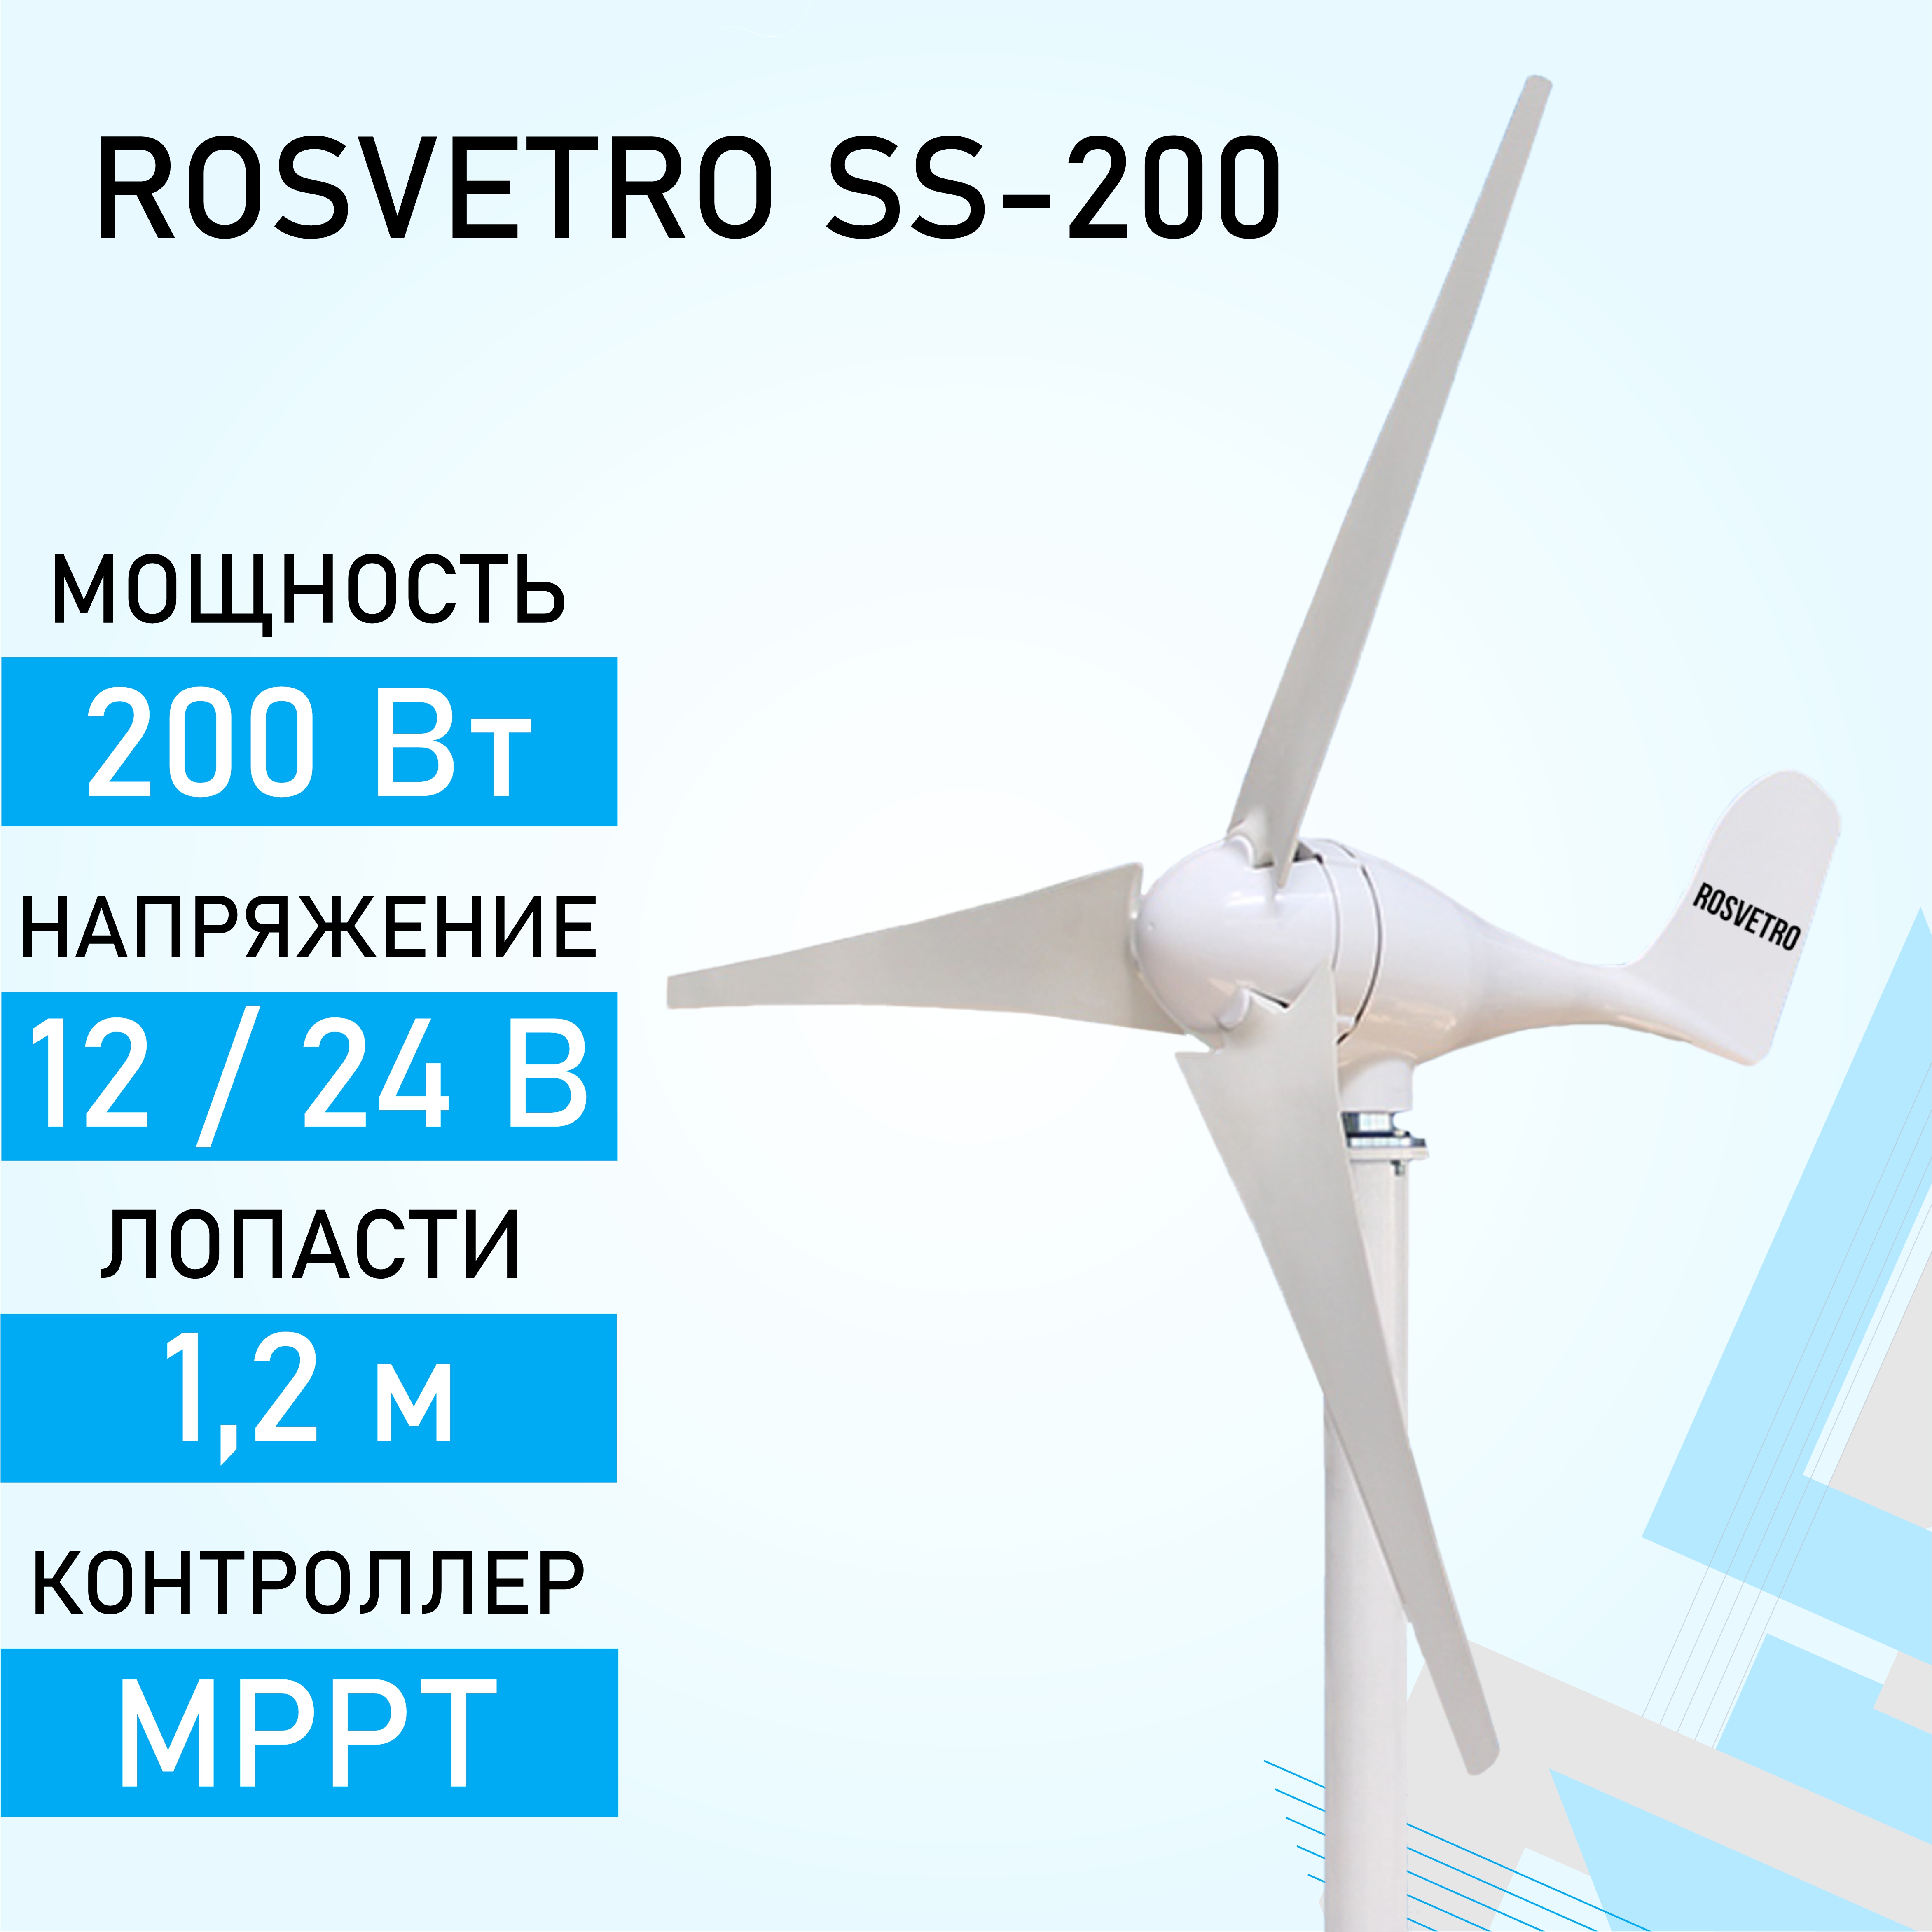 Купить ветрогенератор в Москве ? Цены на ВЭУ, ветроустановку (ветряк)